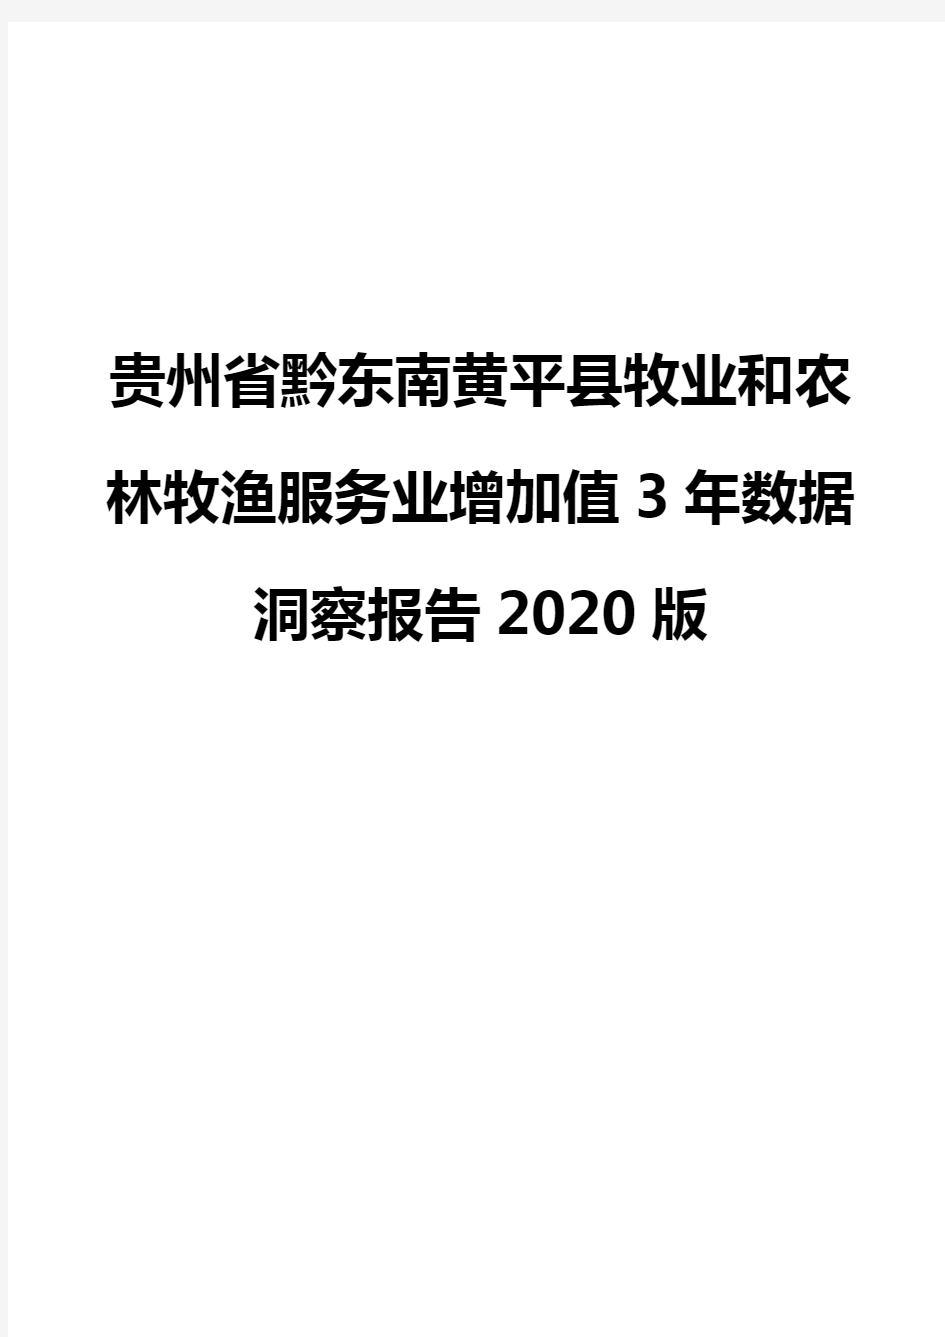 贵州省黔东南黄平县牧业和农林牧渔服务业增加值3年数据洞察报告2020版